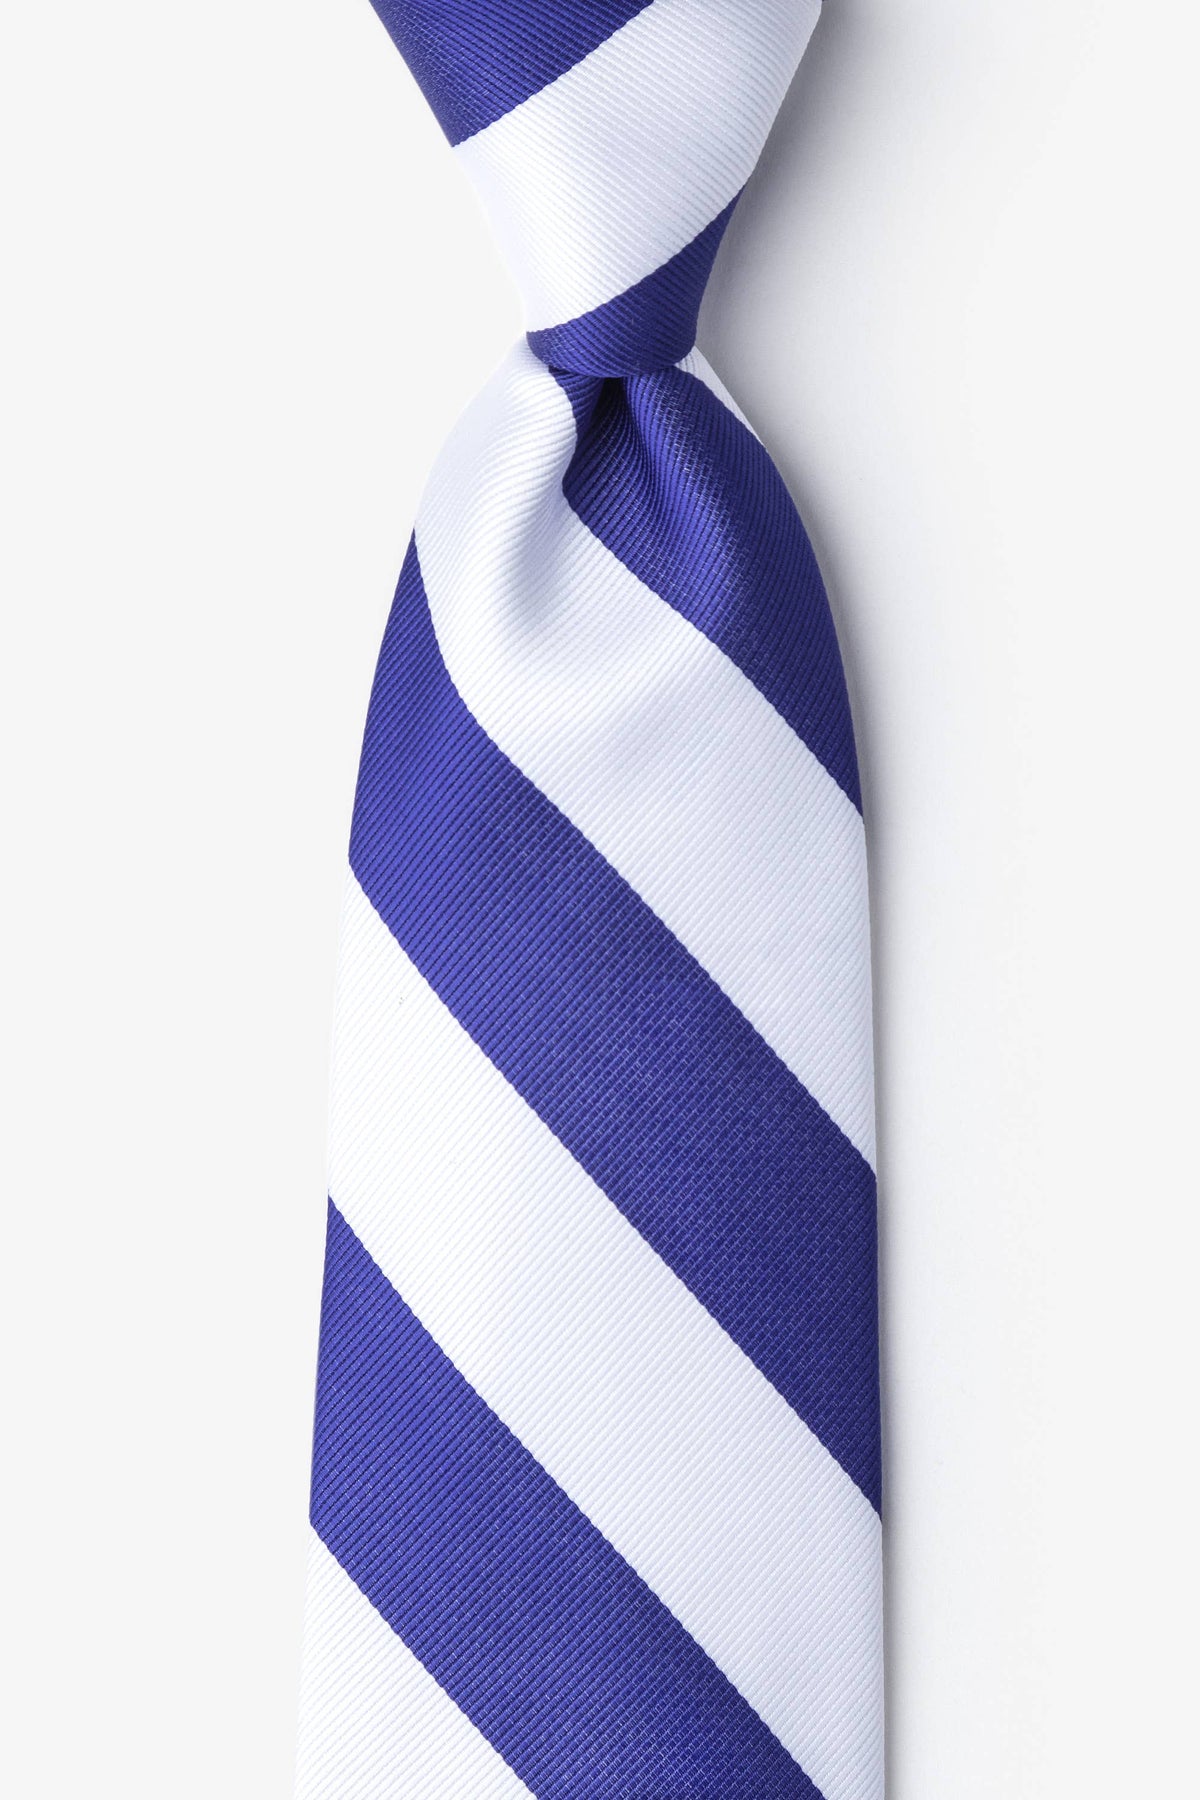 Blue and White College Collegiate Stripe - School Colors: Standard Necktie